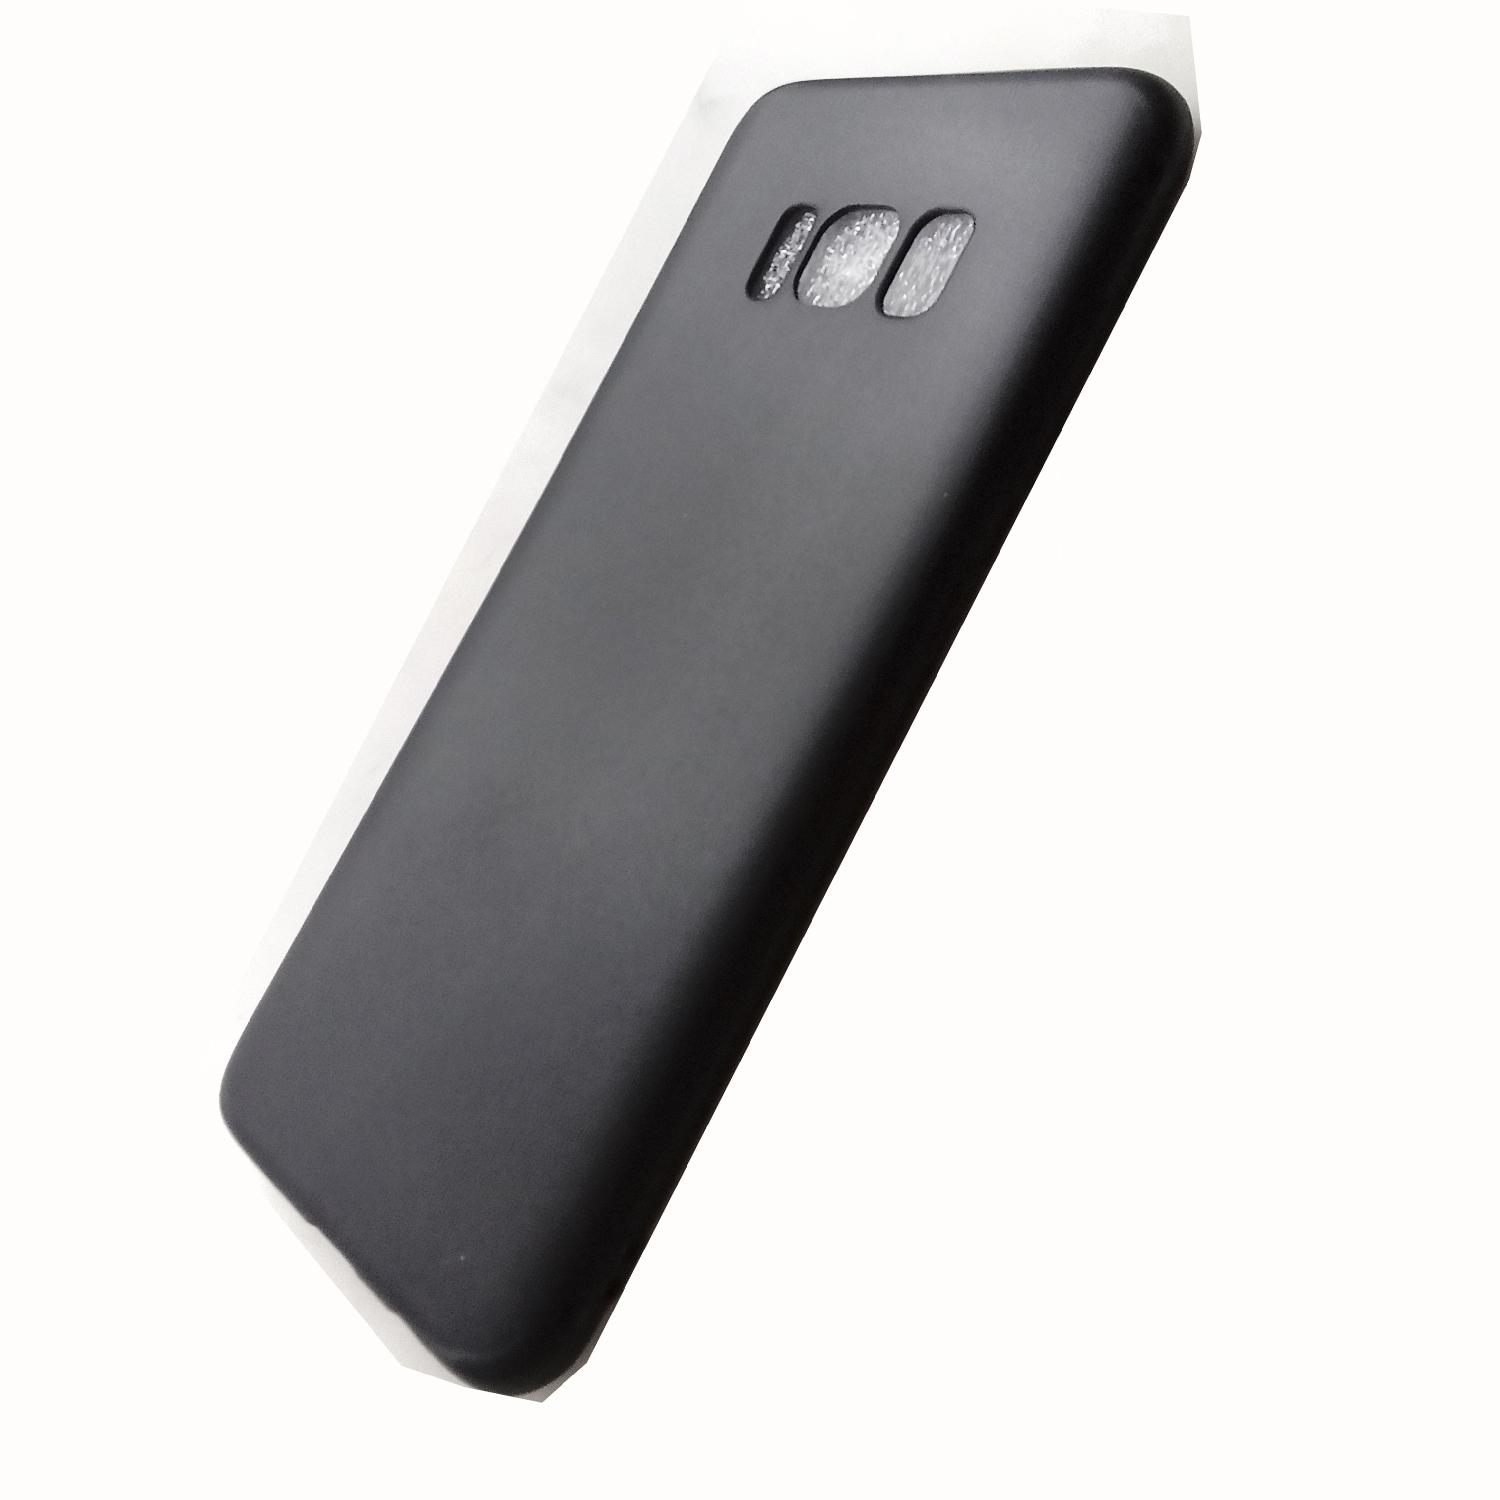 Чехол телефона Samsung G950F Galaxy S8 силикон черный